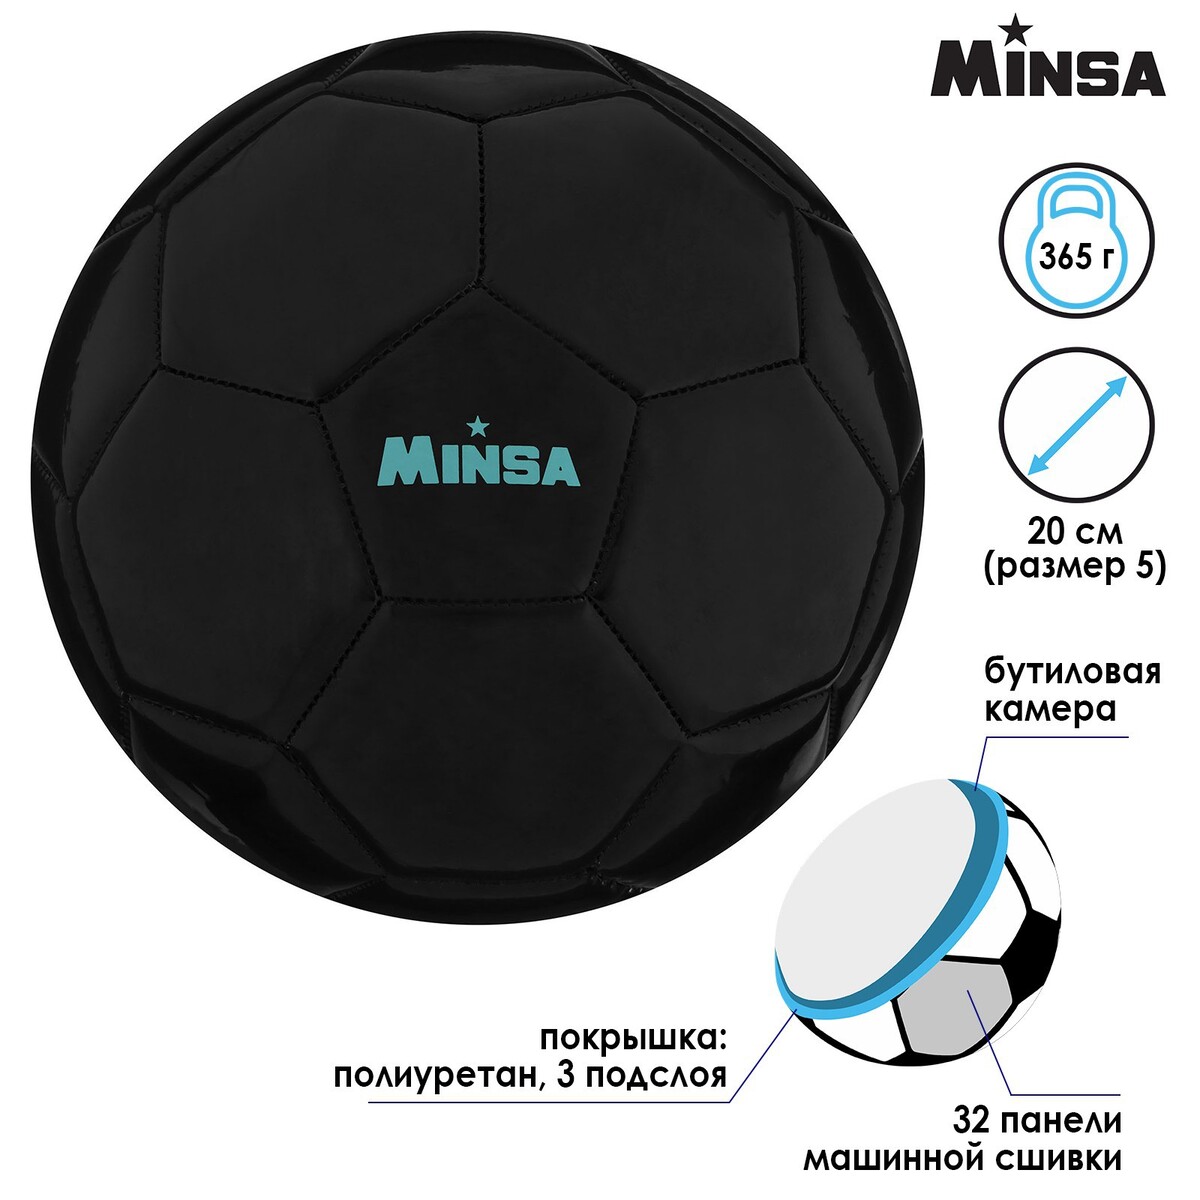 Мяч футбольный minsa, pu, машинная сшивка, 32 панели, размер 5, 365 г, MINSA